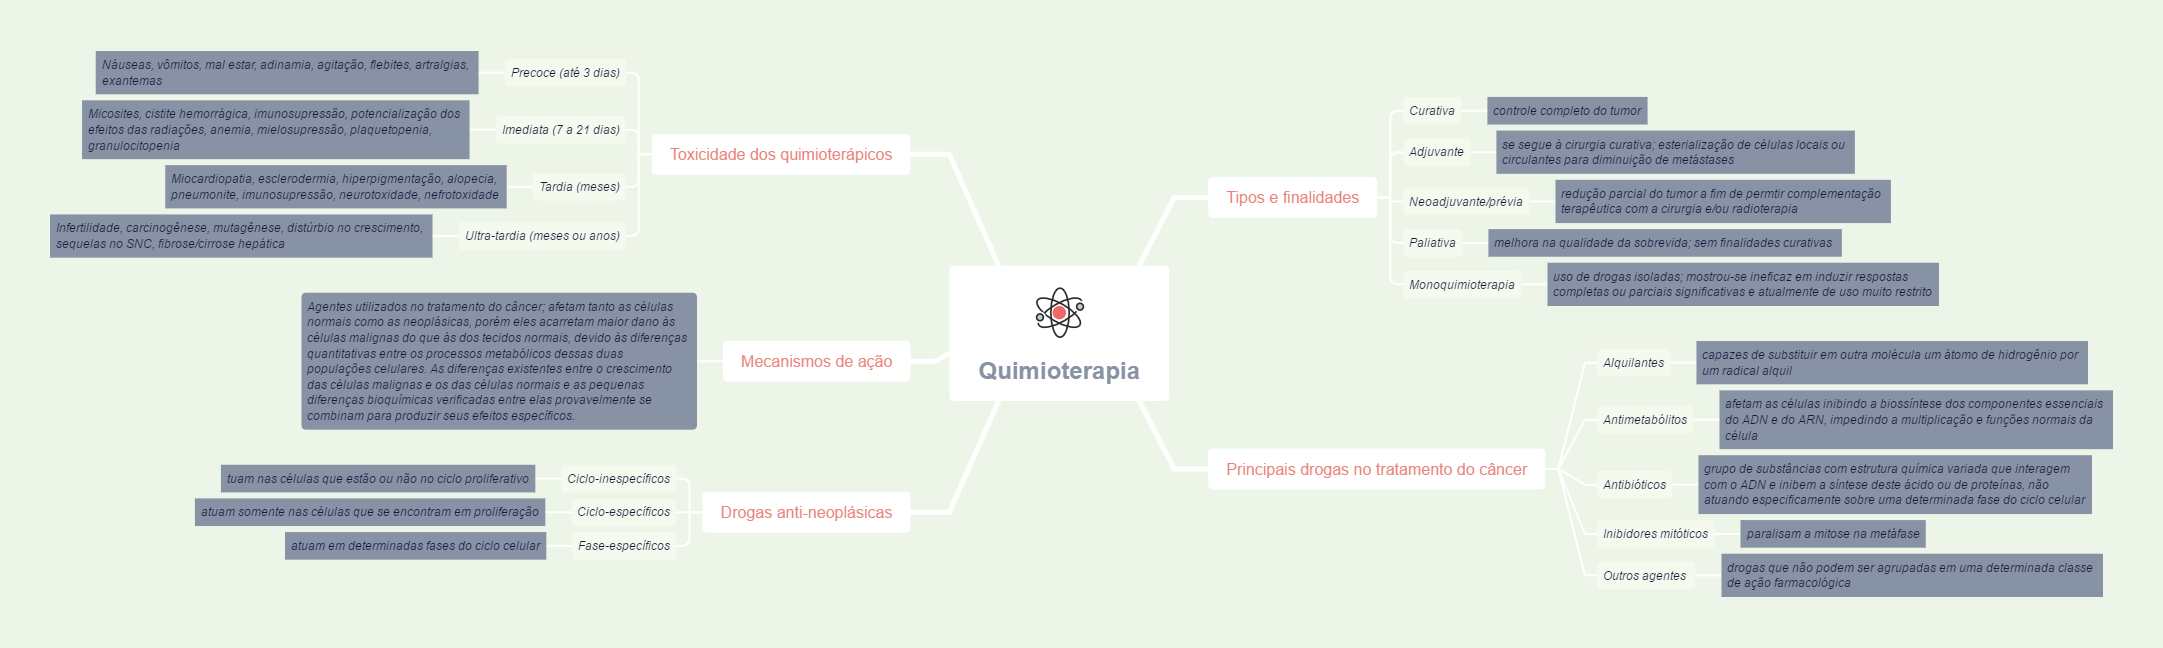 Mapa mental: Quimioterapia - Processos Biológicos